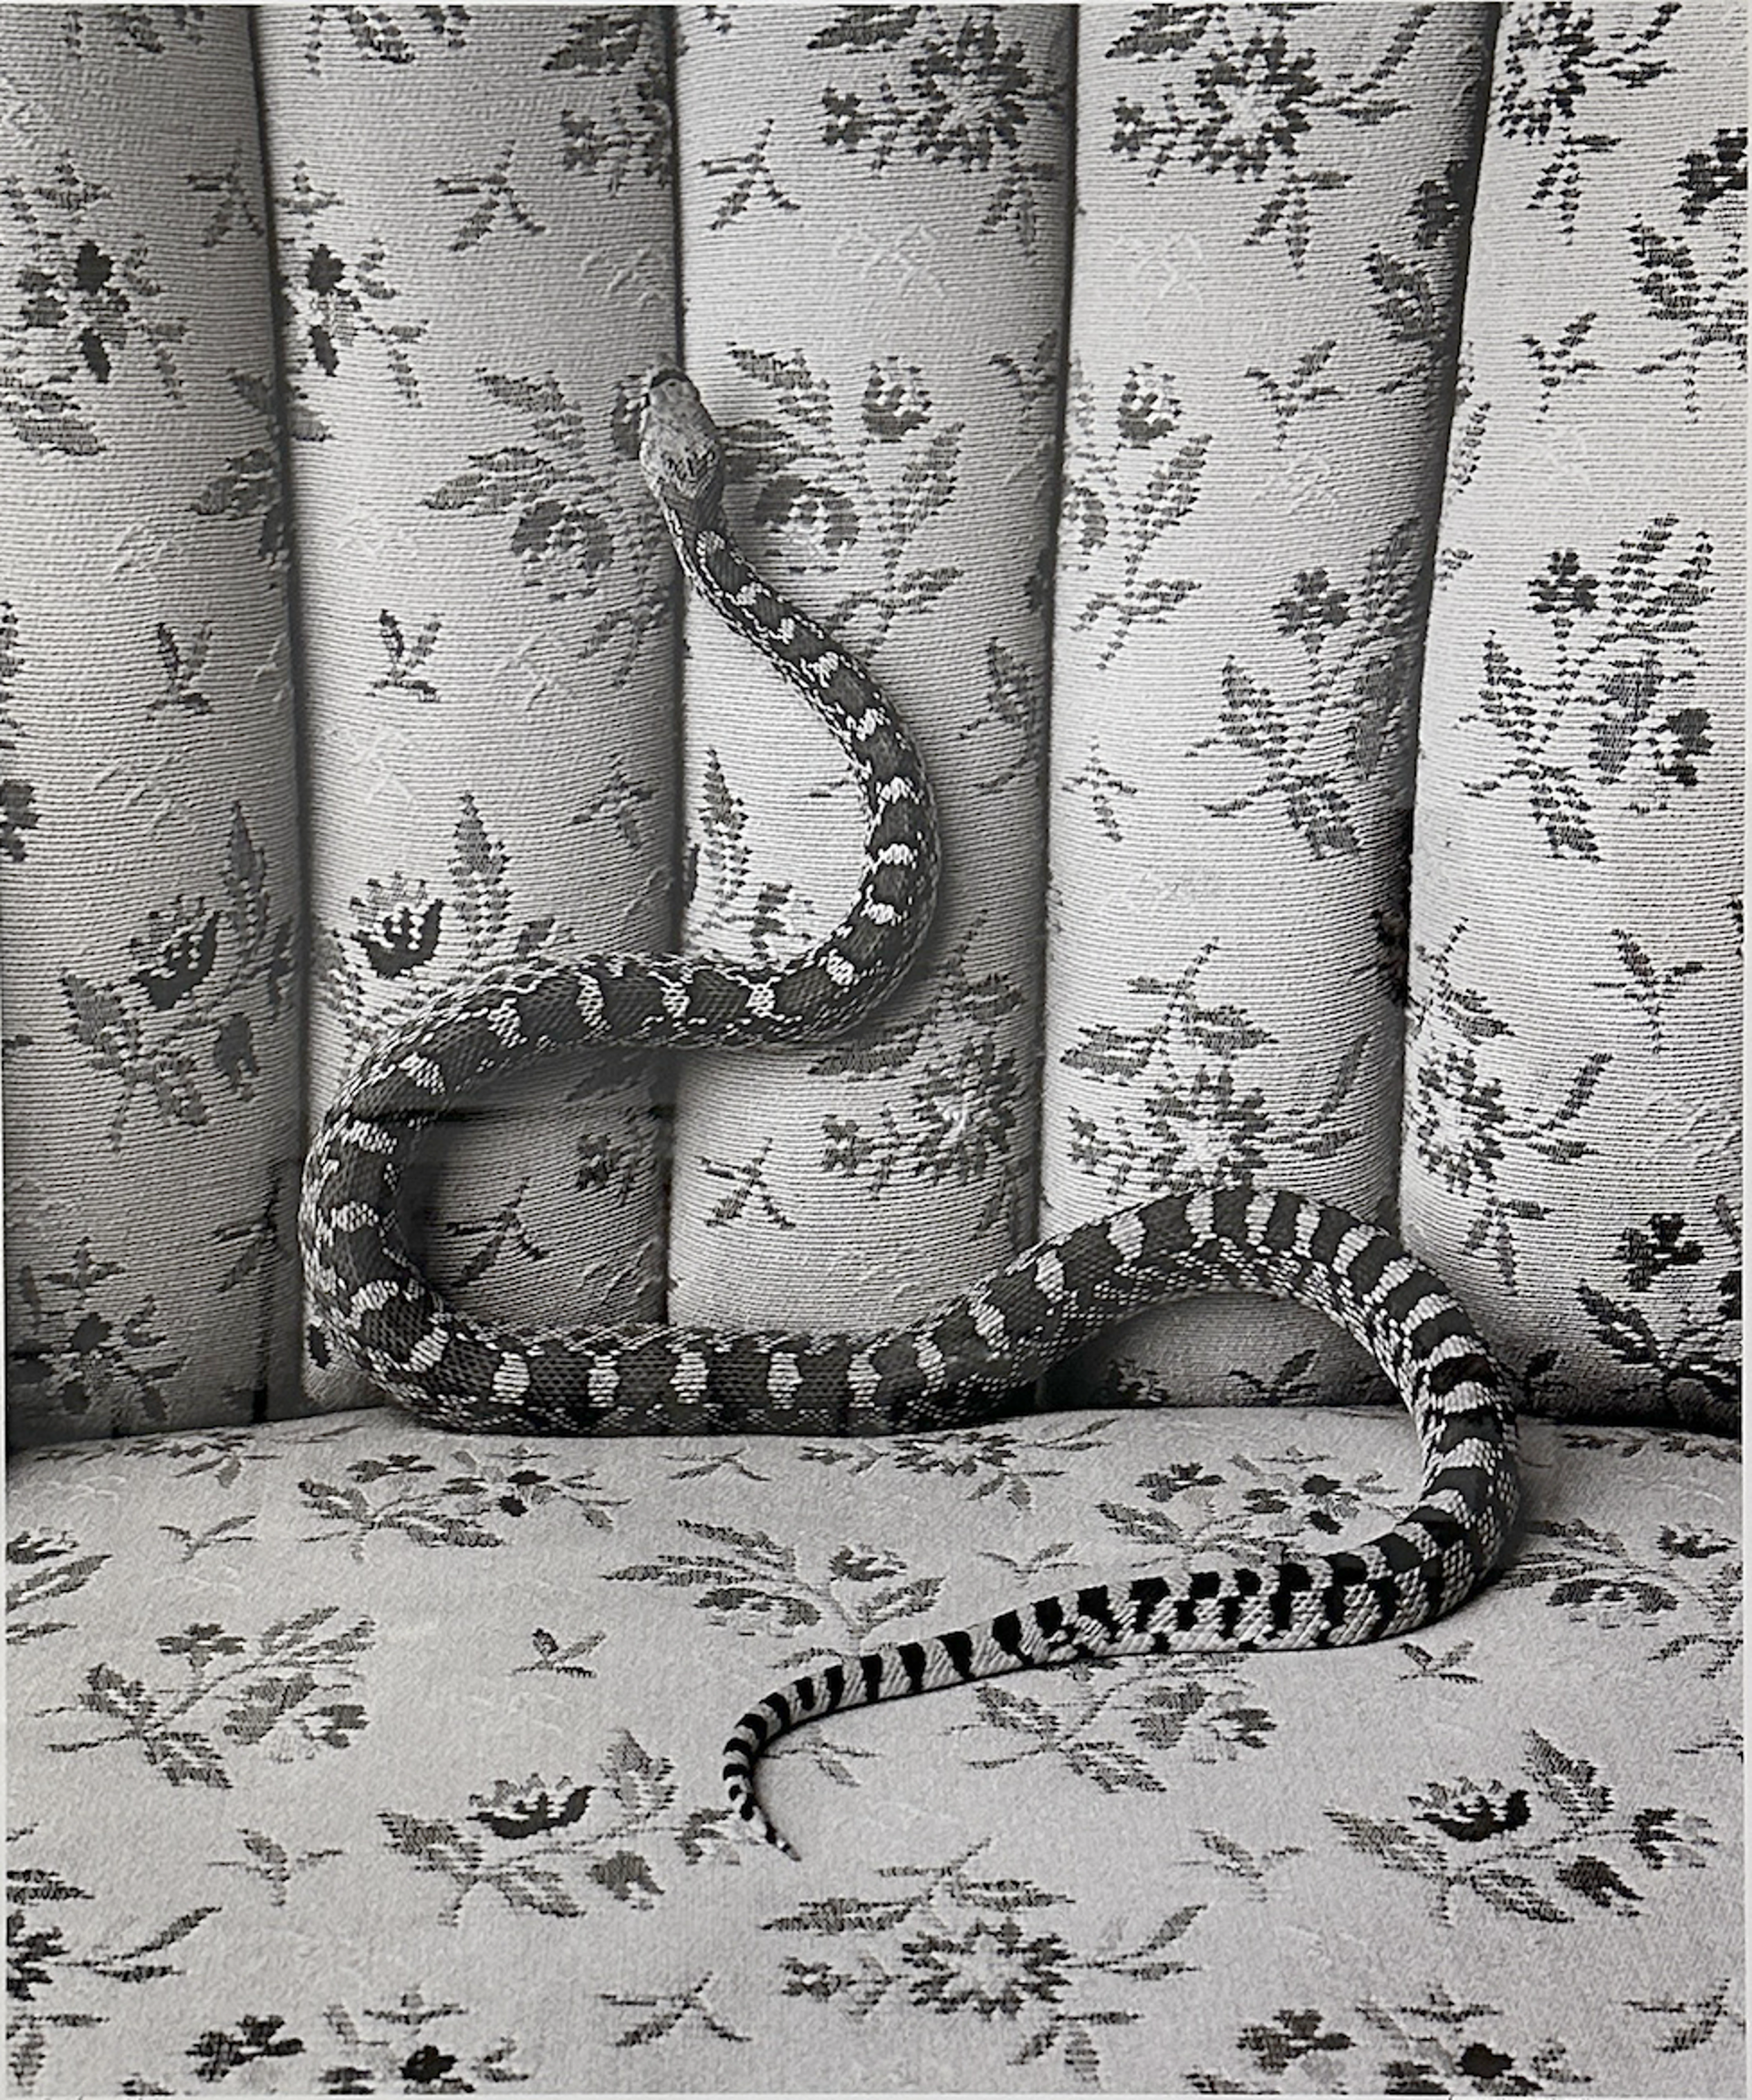 Bull Snake on Sofa by James H. Evans